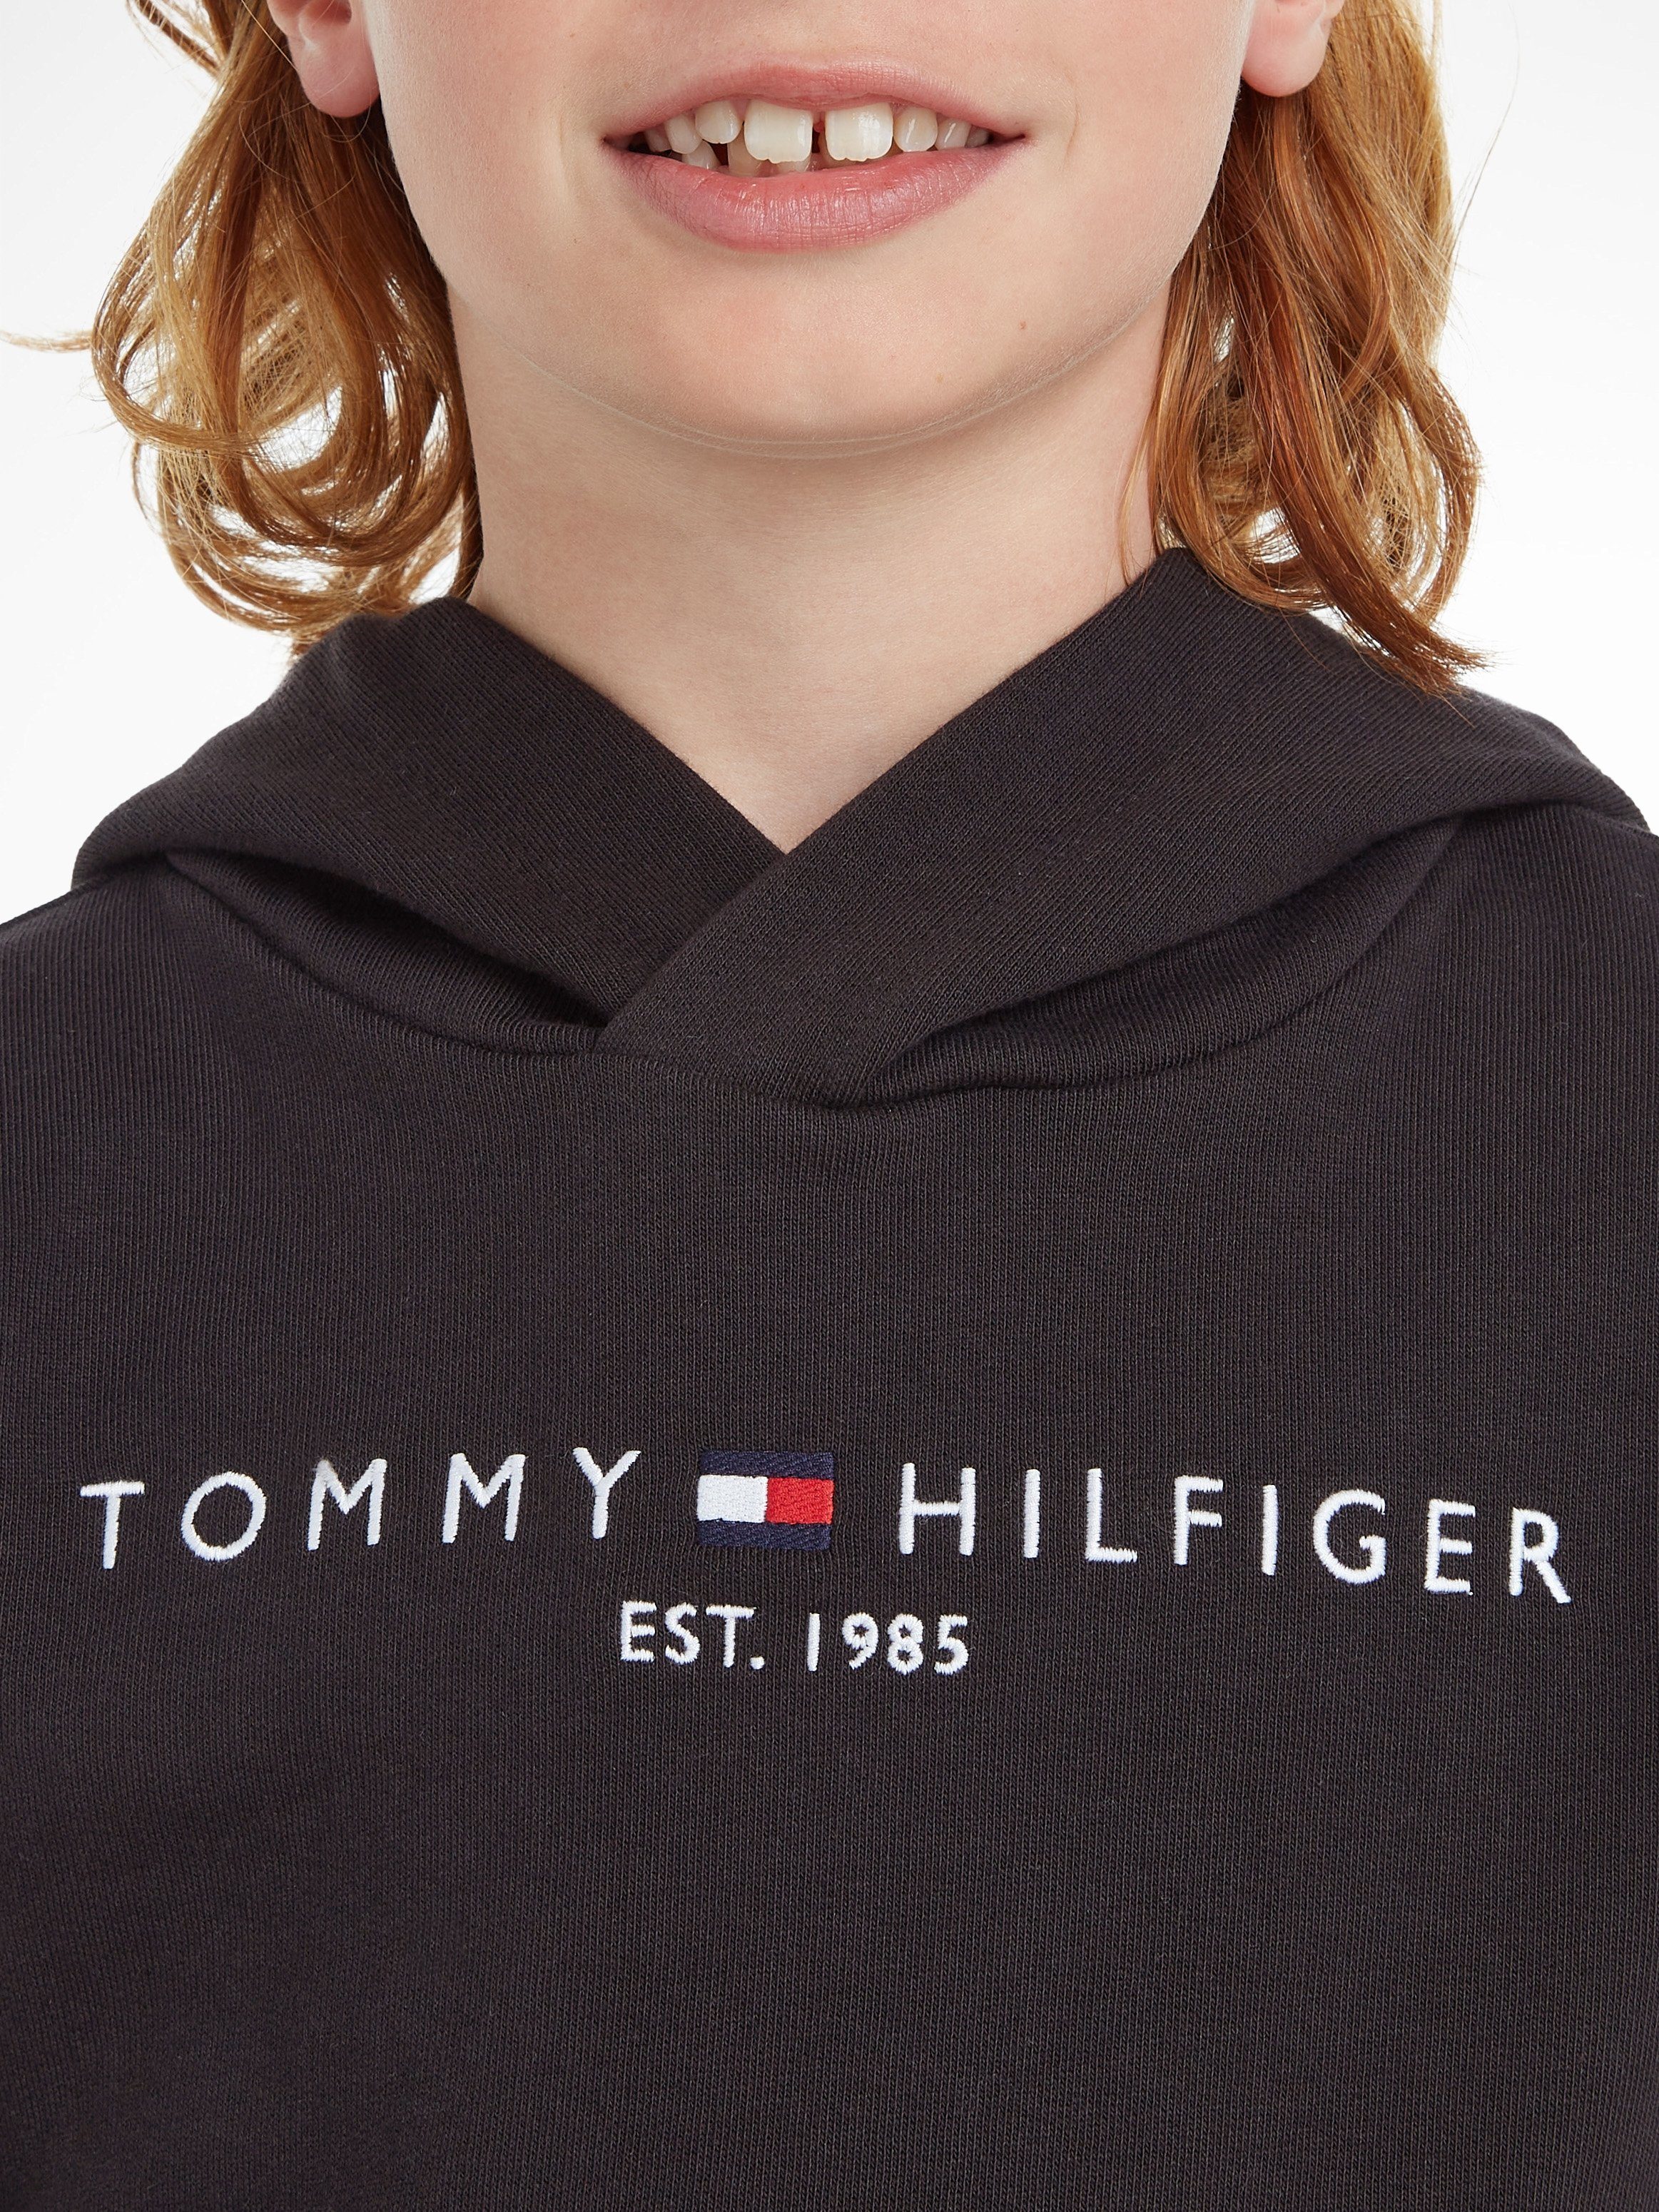 HOODIE und Kapuzensweatshirt Junior Kinder Tommy Kids Mädchen Jungen Hilfiger MiniMe,für ESSENTIAL